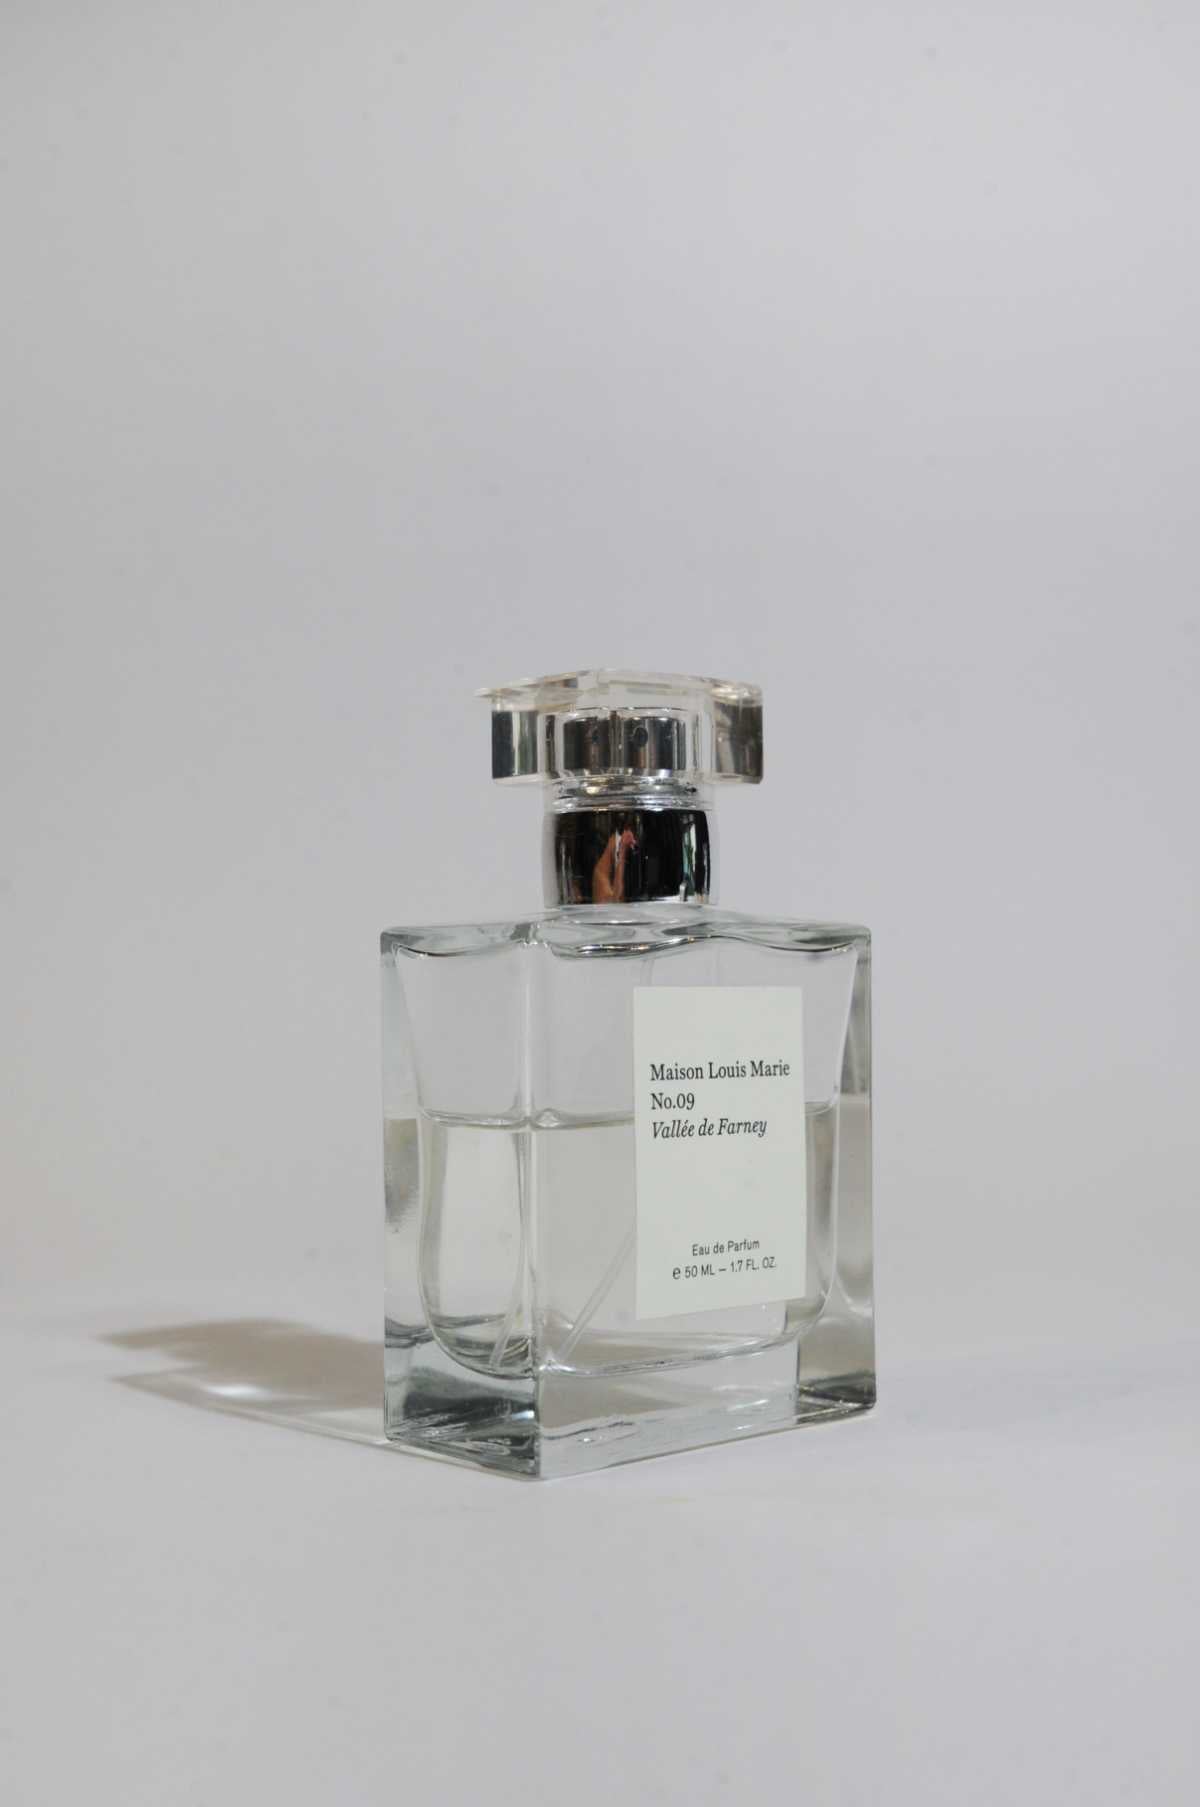 Maison Louis Marie No.09 Vallee de Farney Eau de Parfum 1.7 oz/ 50 mL